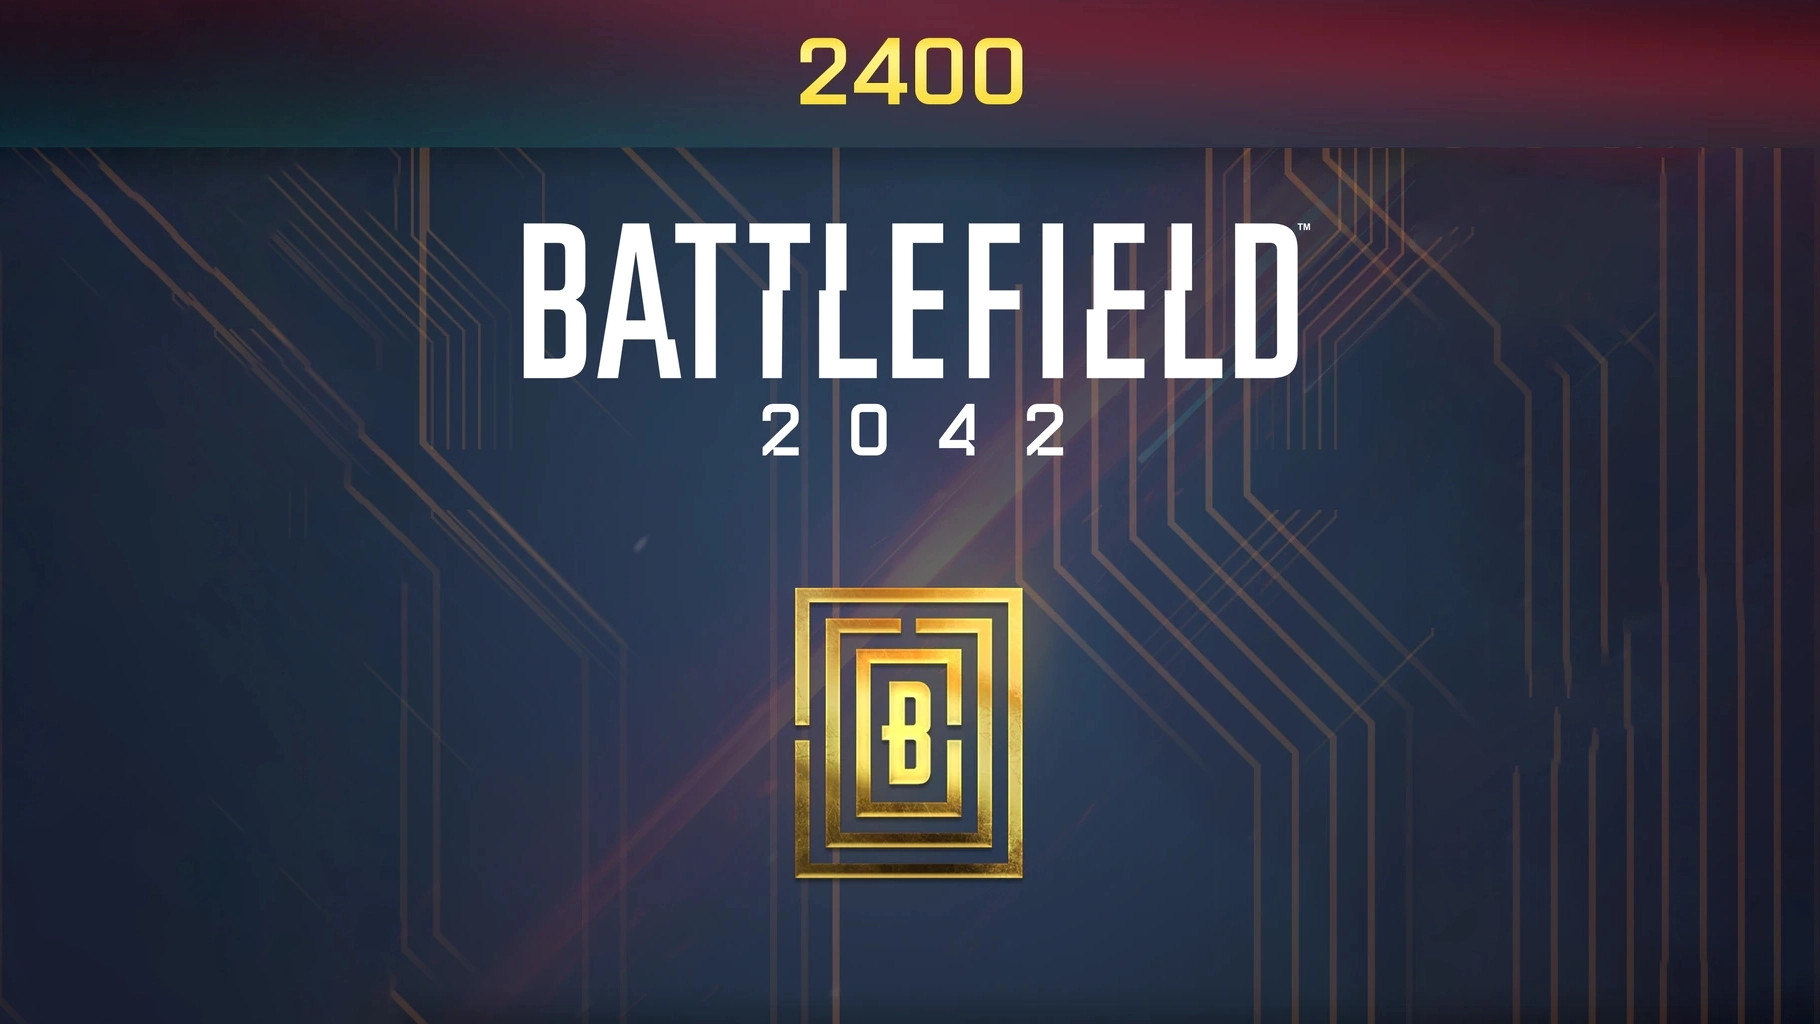 Battlefield 2042 - 2400 BFC Balance XBOX One / Xbox Series X|S CD Key 20.9 usd